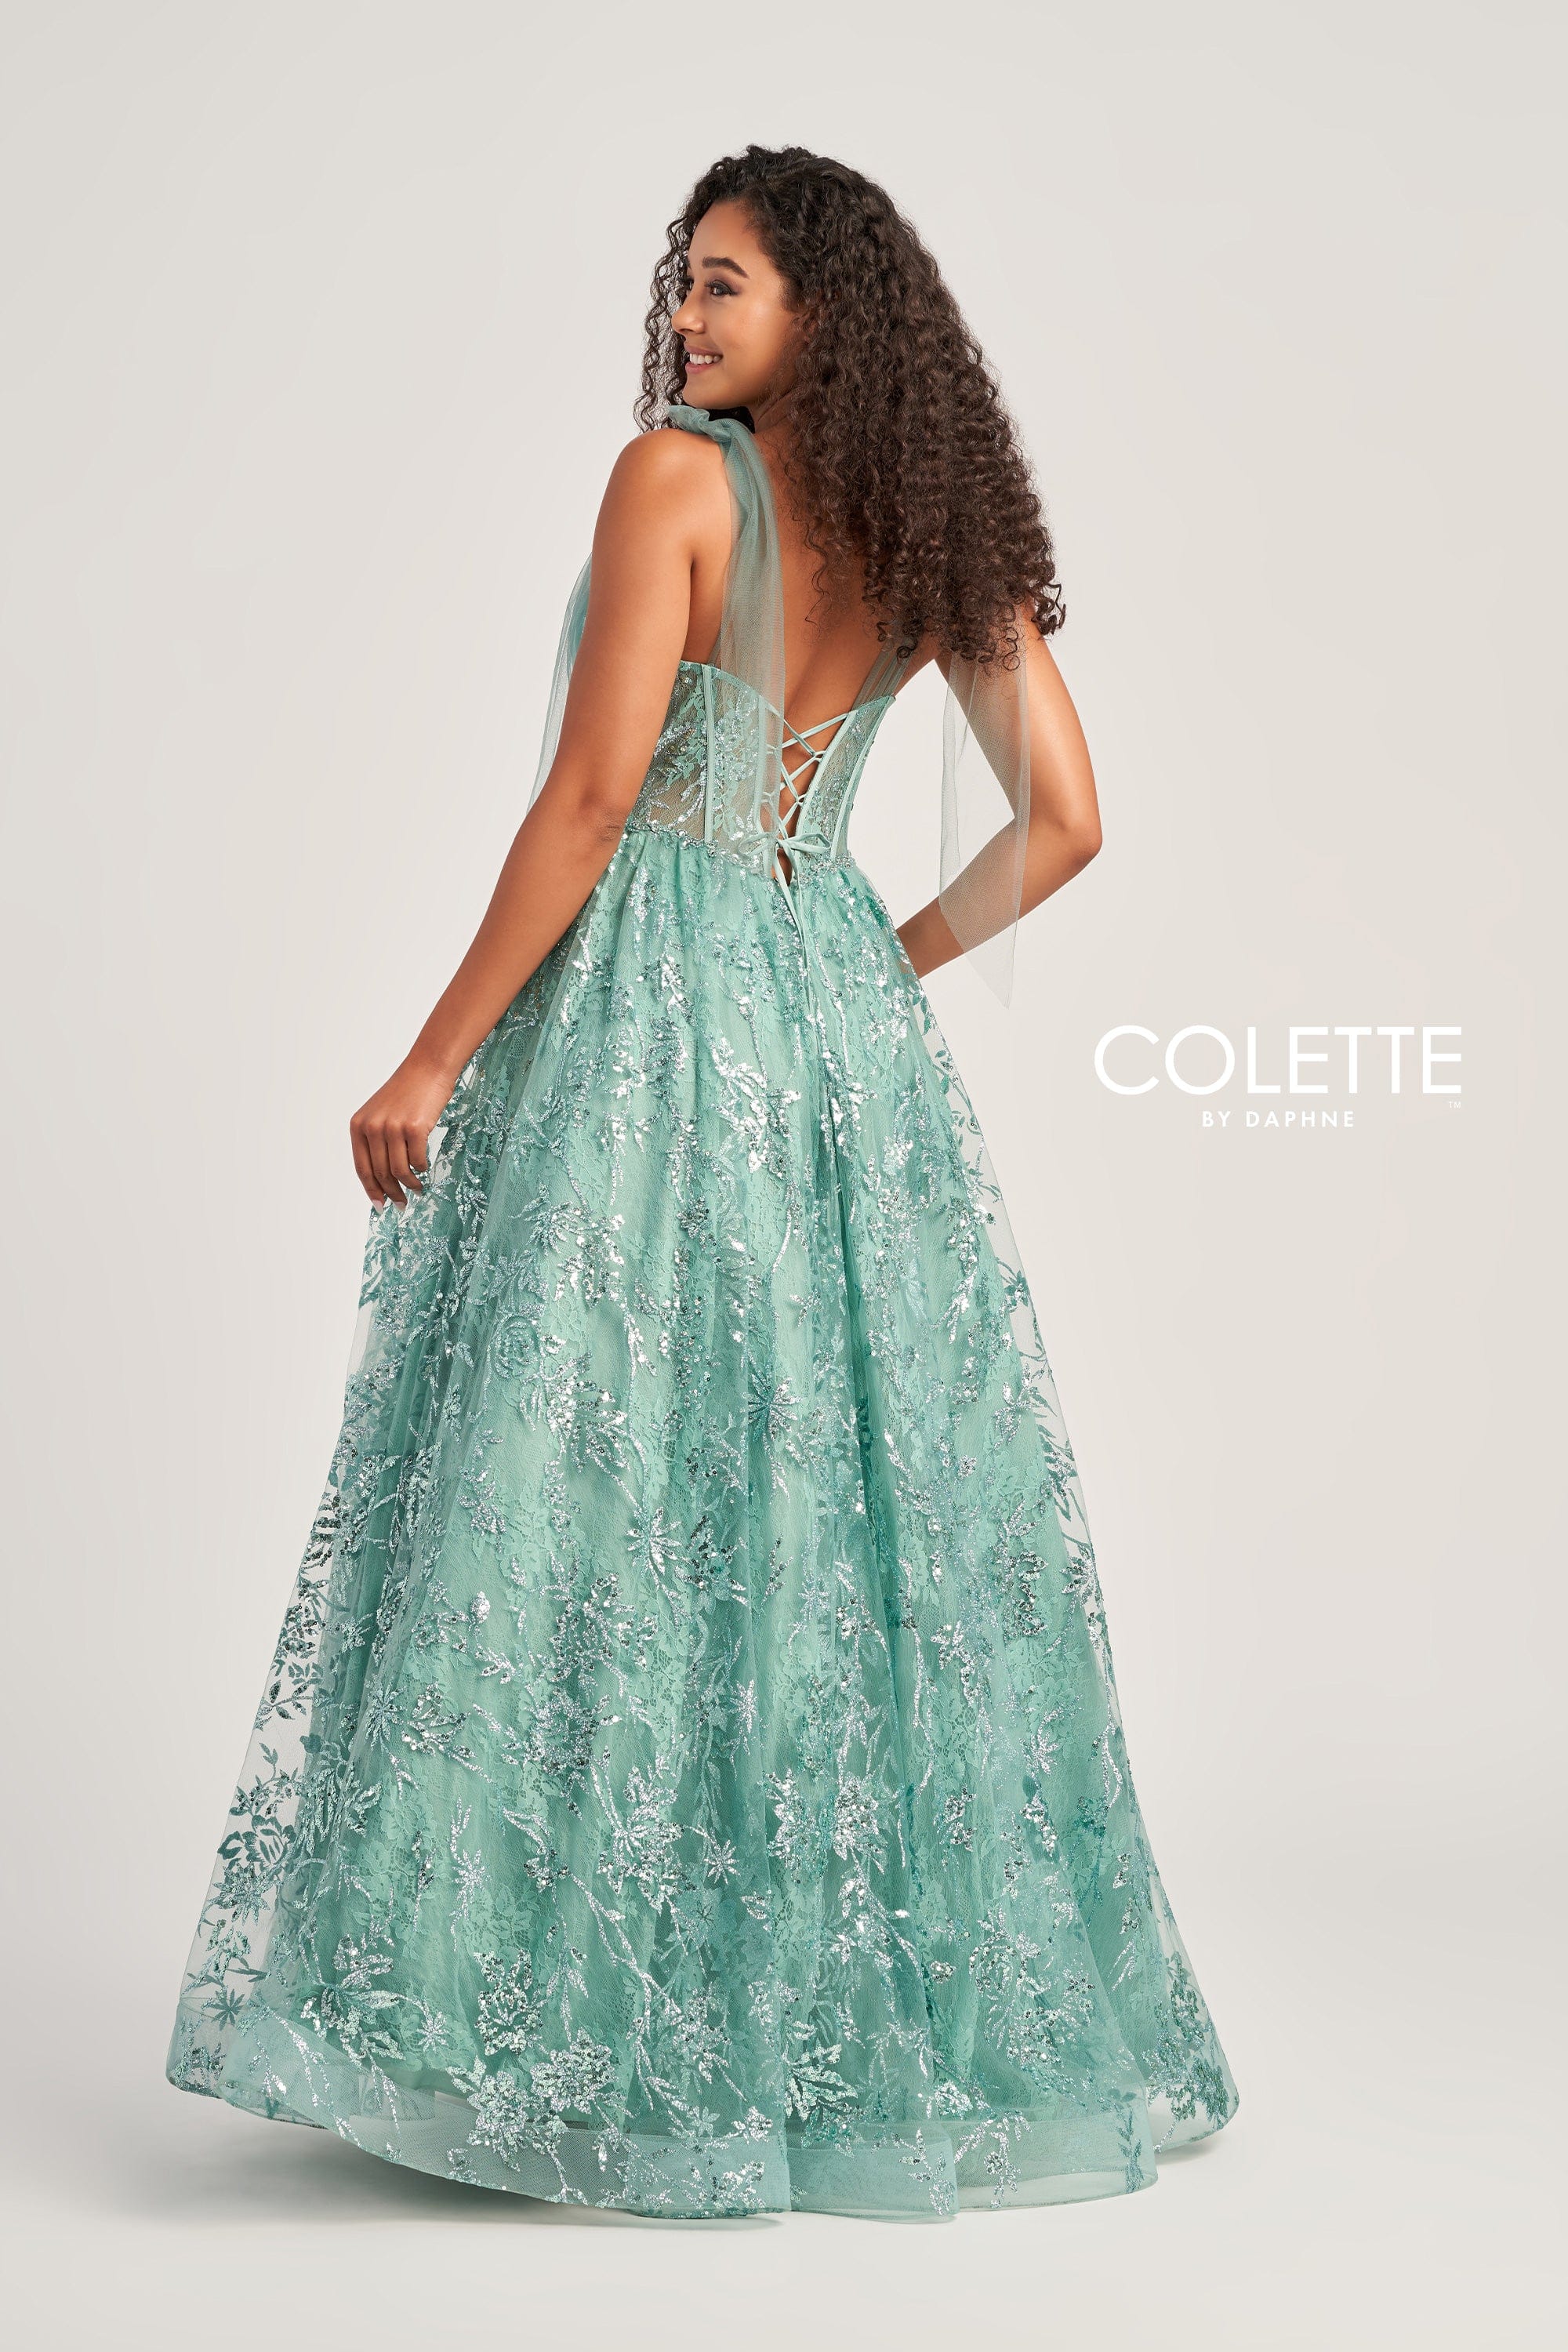 Colette for Mon Cheri Prom Colette: CL5236